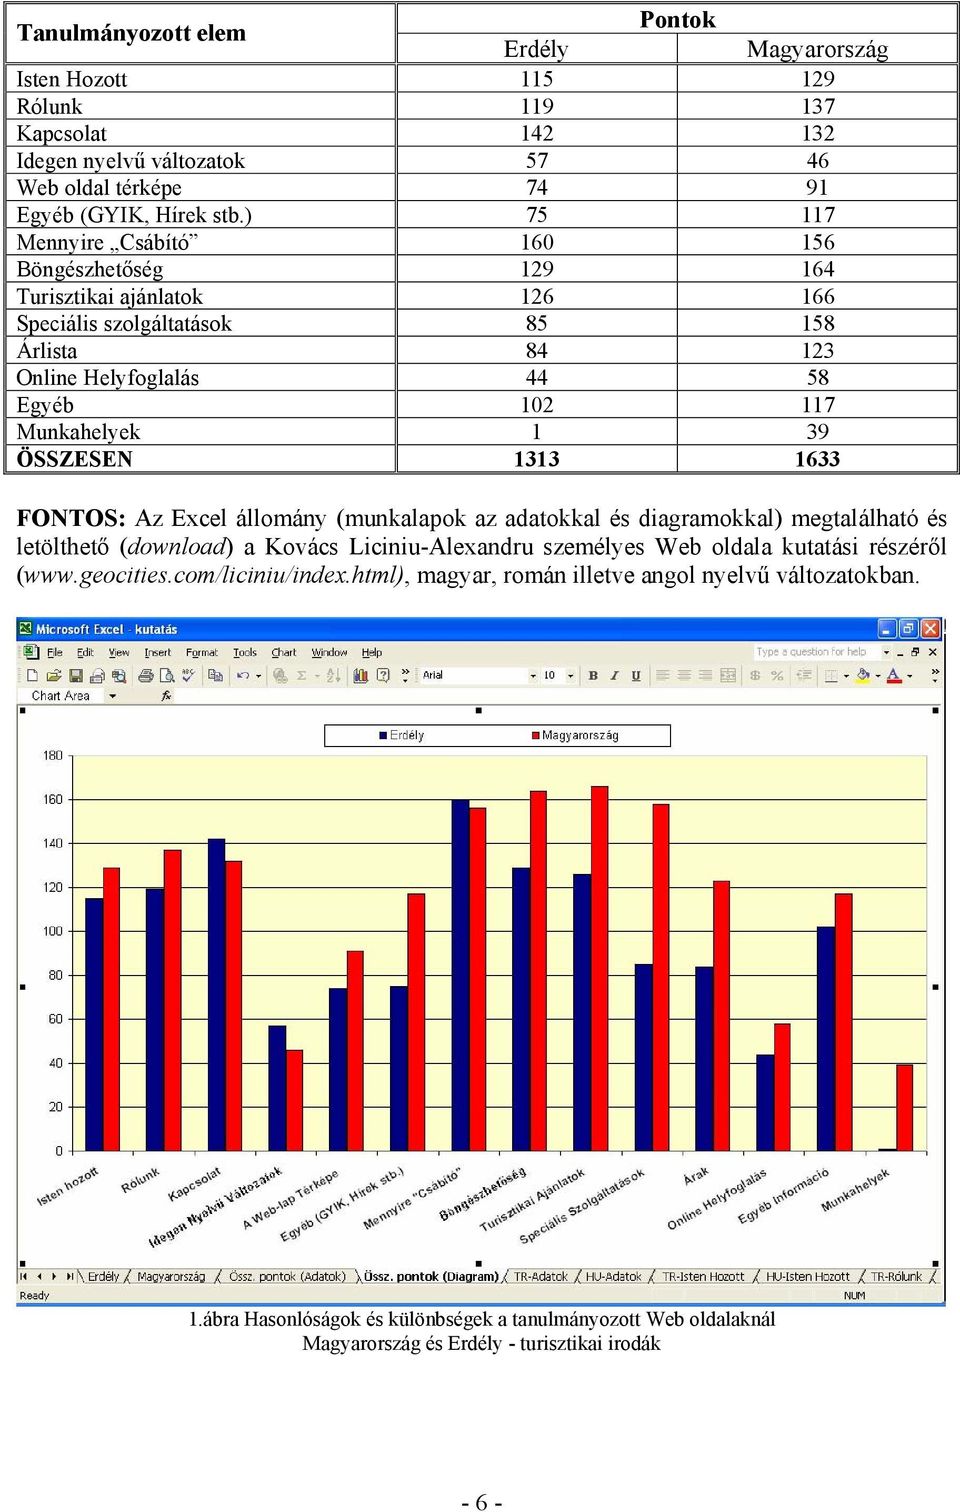 1 39 ÖSSZESEN 1313 1633 FONTOS: Az Excel állomány (munkalapok az adatokkal és diagramokkal) megtalálható és letölthető (download) a Kovács Liciniu-Alexandru személyes Web oldala kutatási